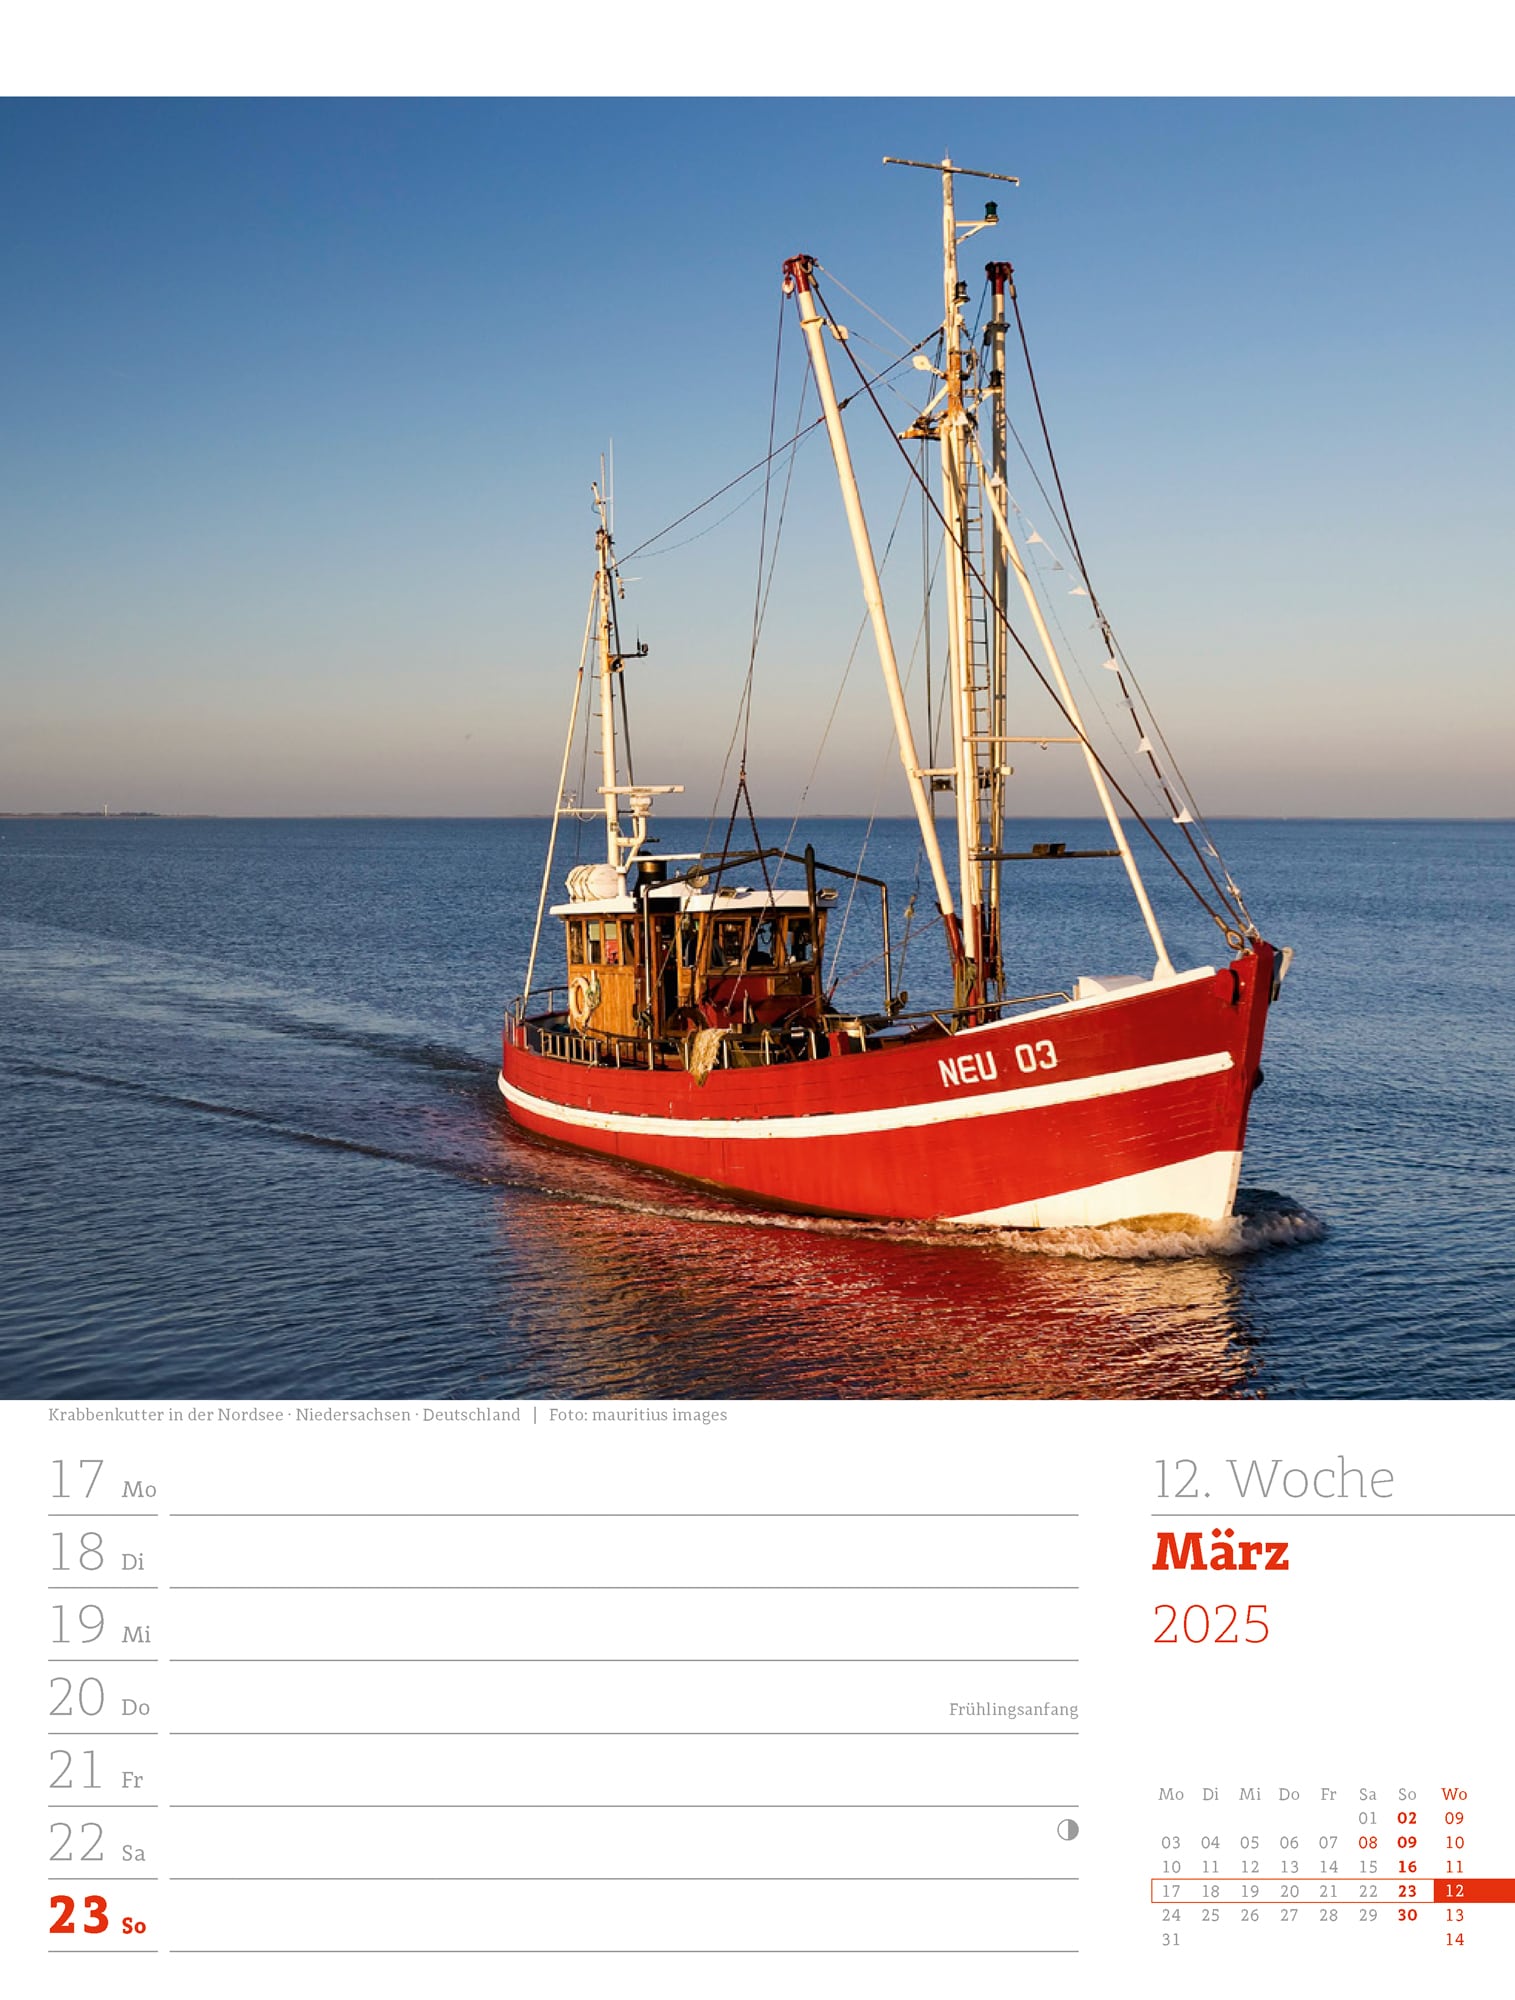 Ackermann Calendar At the Seaside 2025 - Weekly Planner - Inside View 15